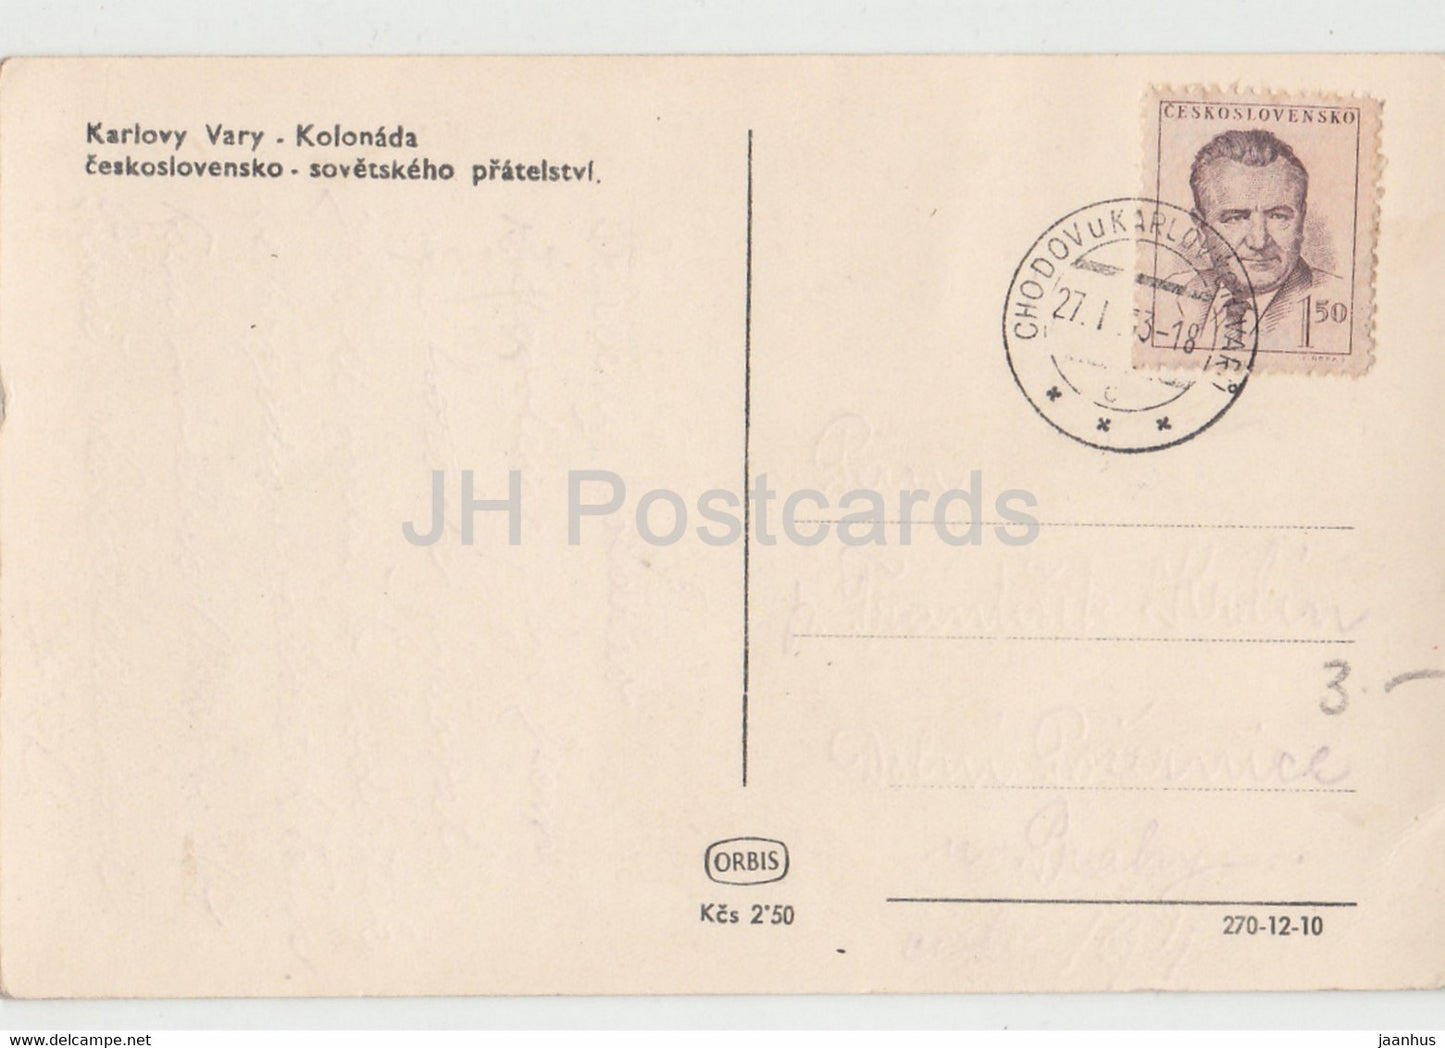 Karlsbad - Karlsbad - Kolonada - Kolonnade - alte Postkarte - Tschechoslowakei - Tschechische Republik - gebraucht